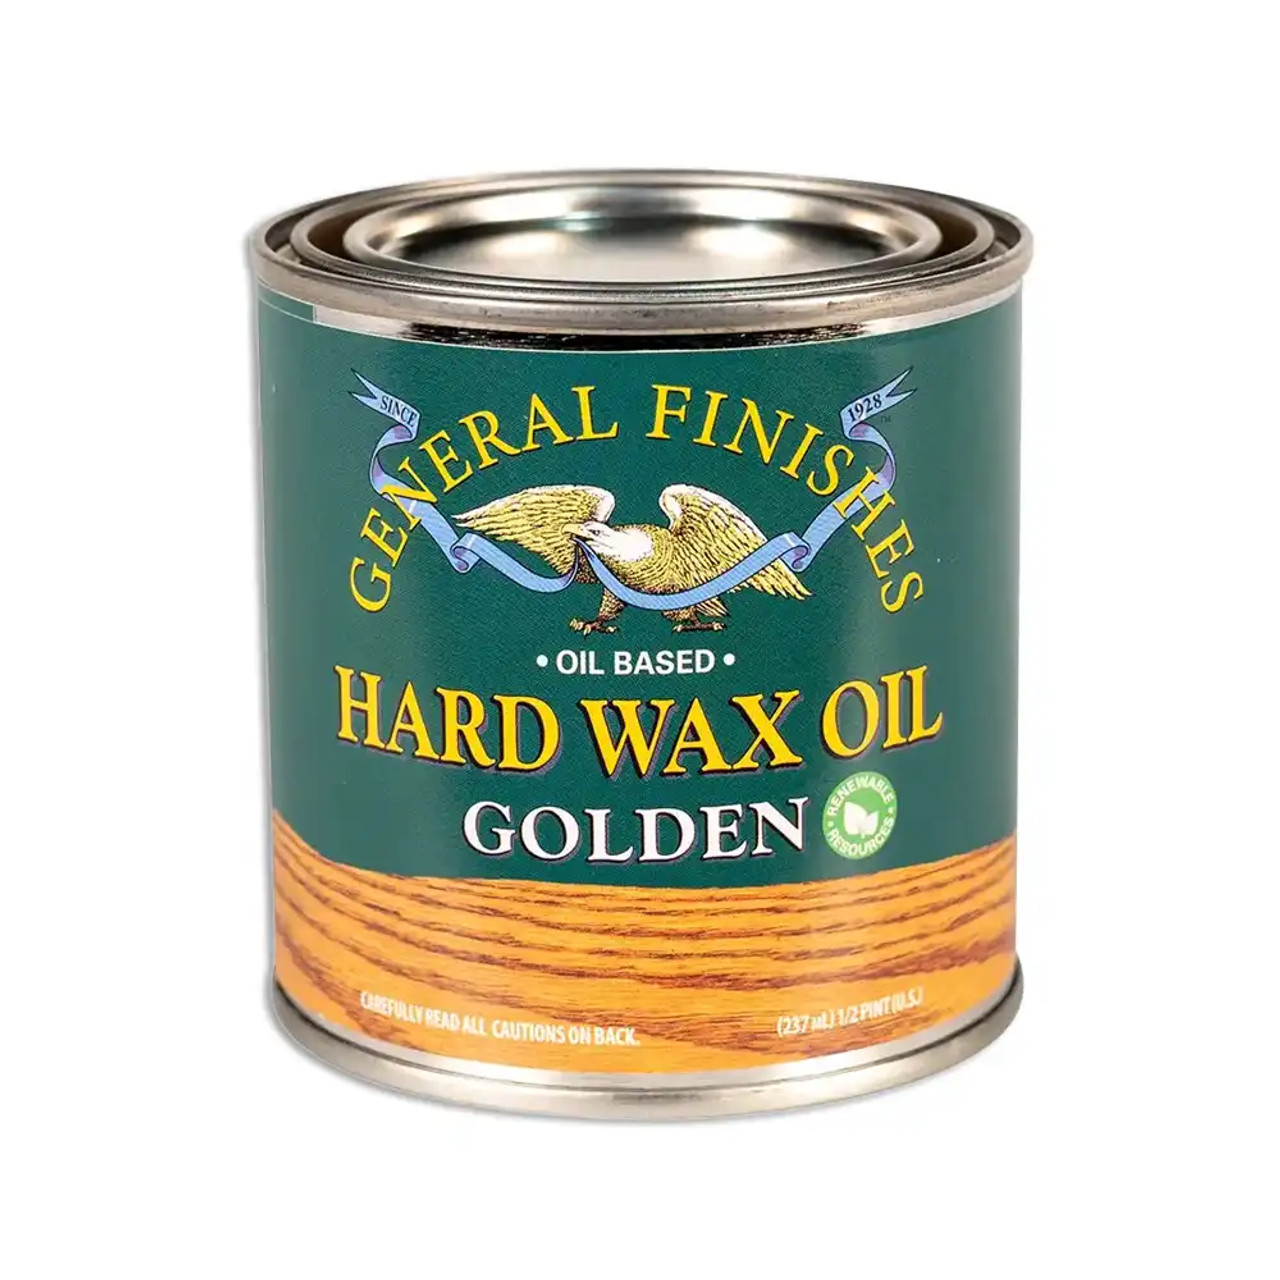 Hard Wax Oil Golden 1/2 Pint